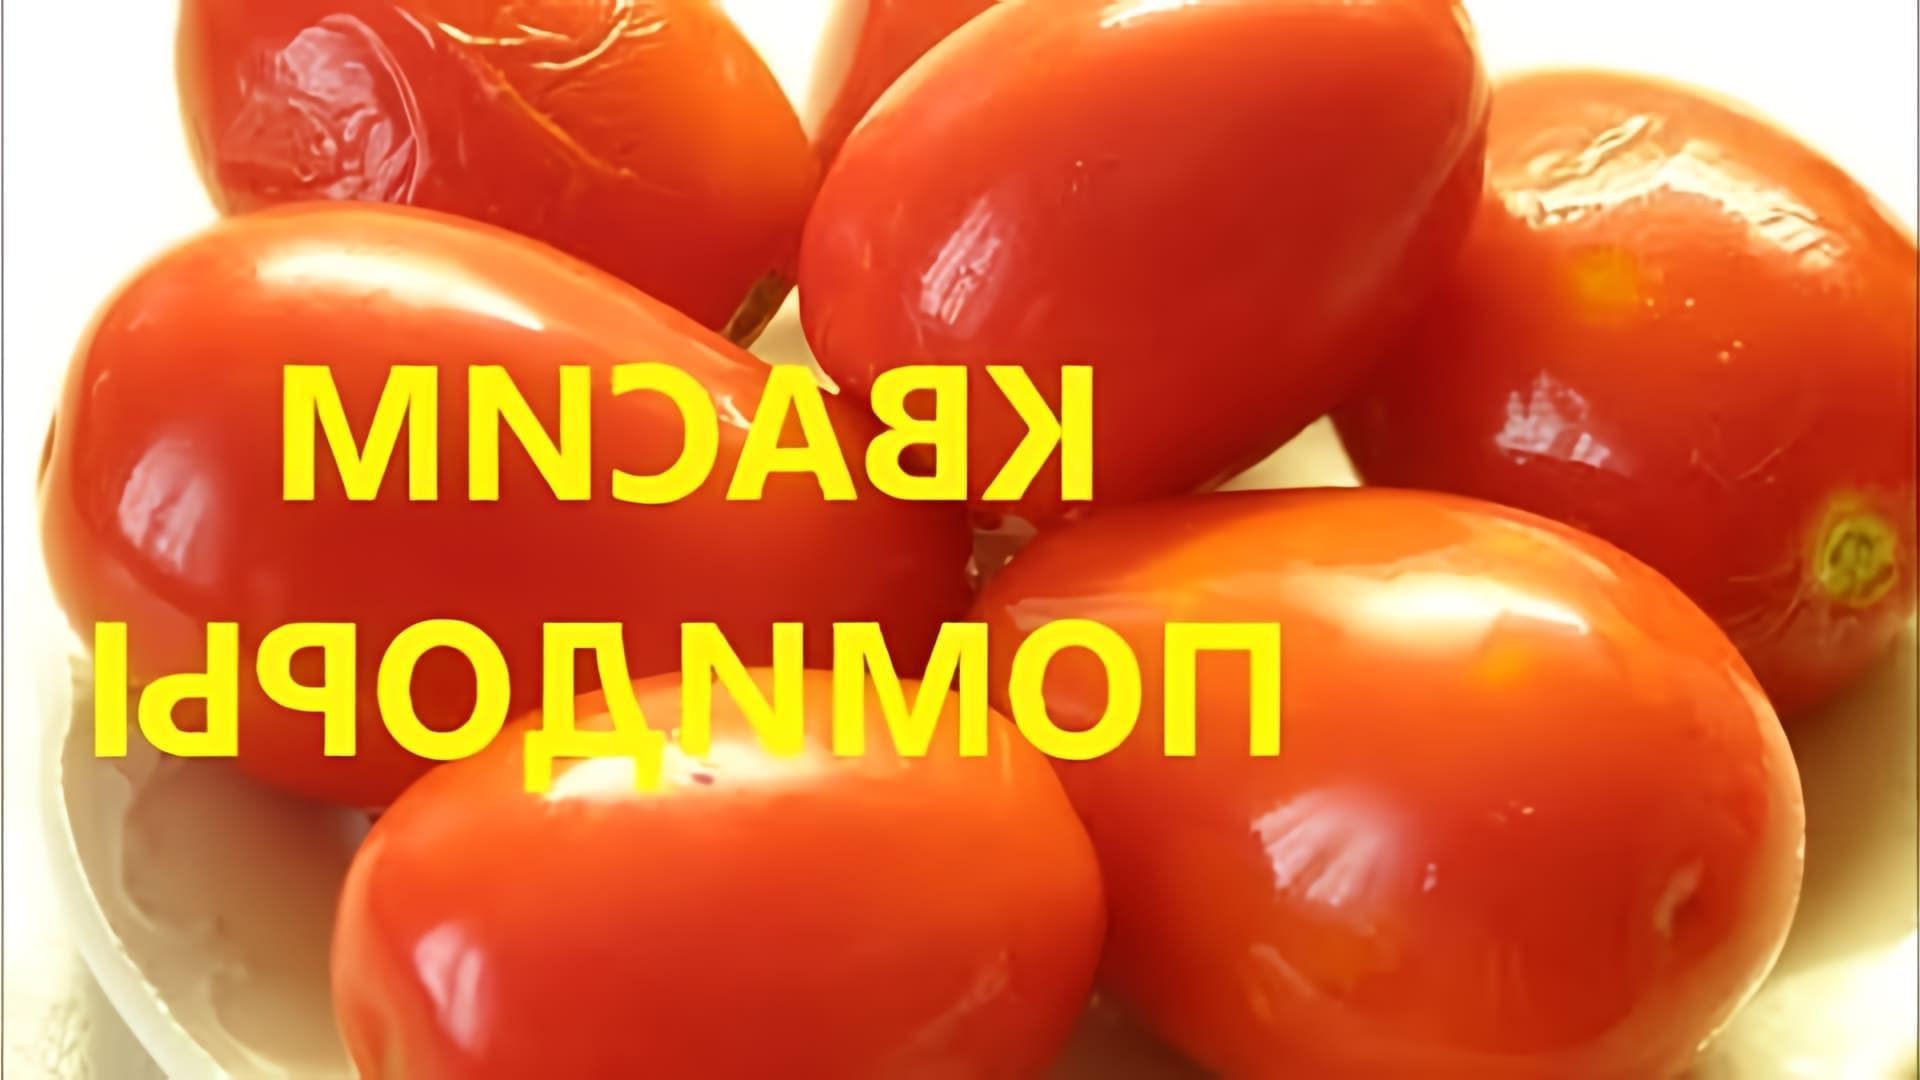 В этом видео демонстрируется процесс приготовления квашеных помидоров, которые называются шампанскими или газированными